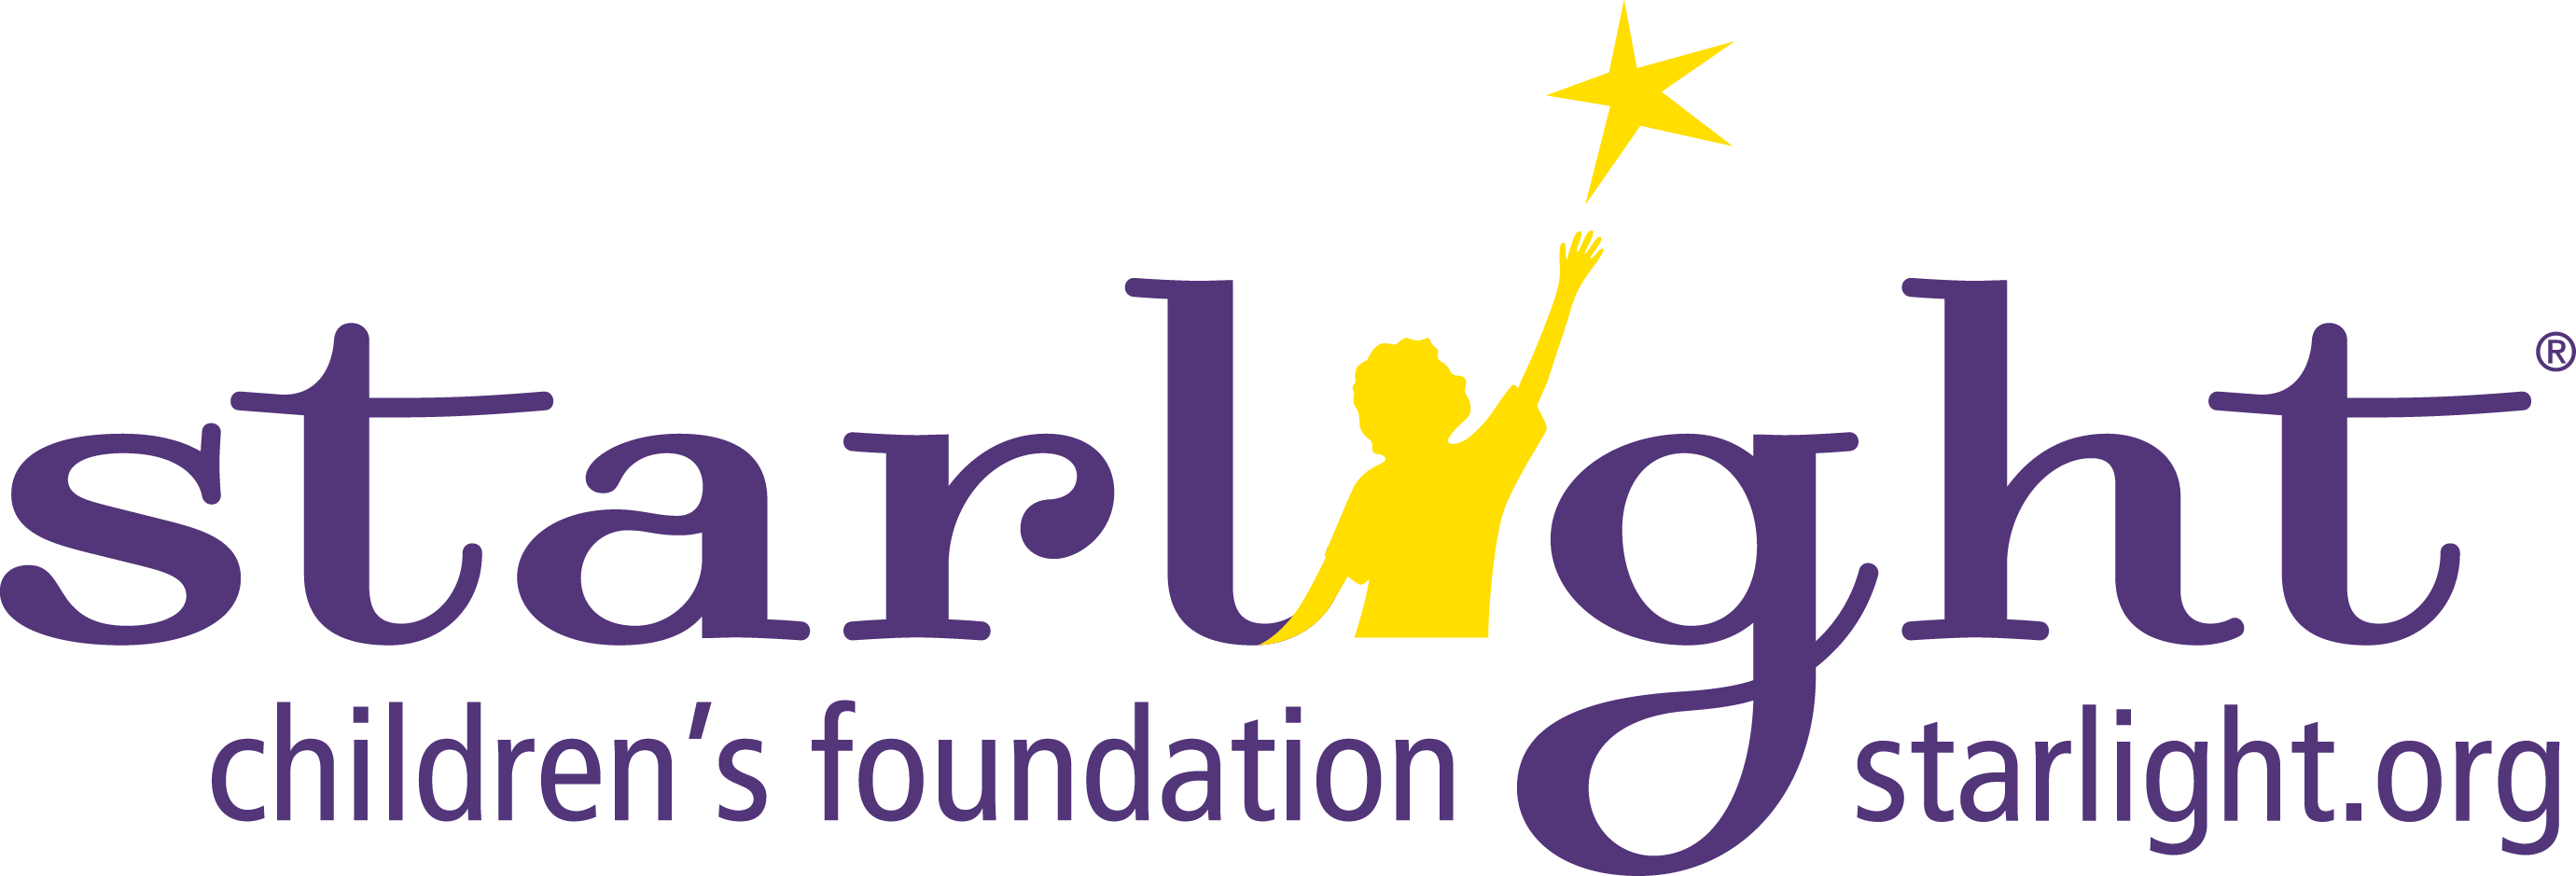 Starlight Foundation - Market Sharx